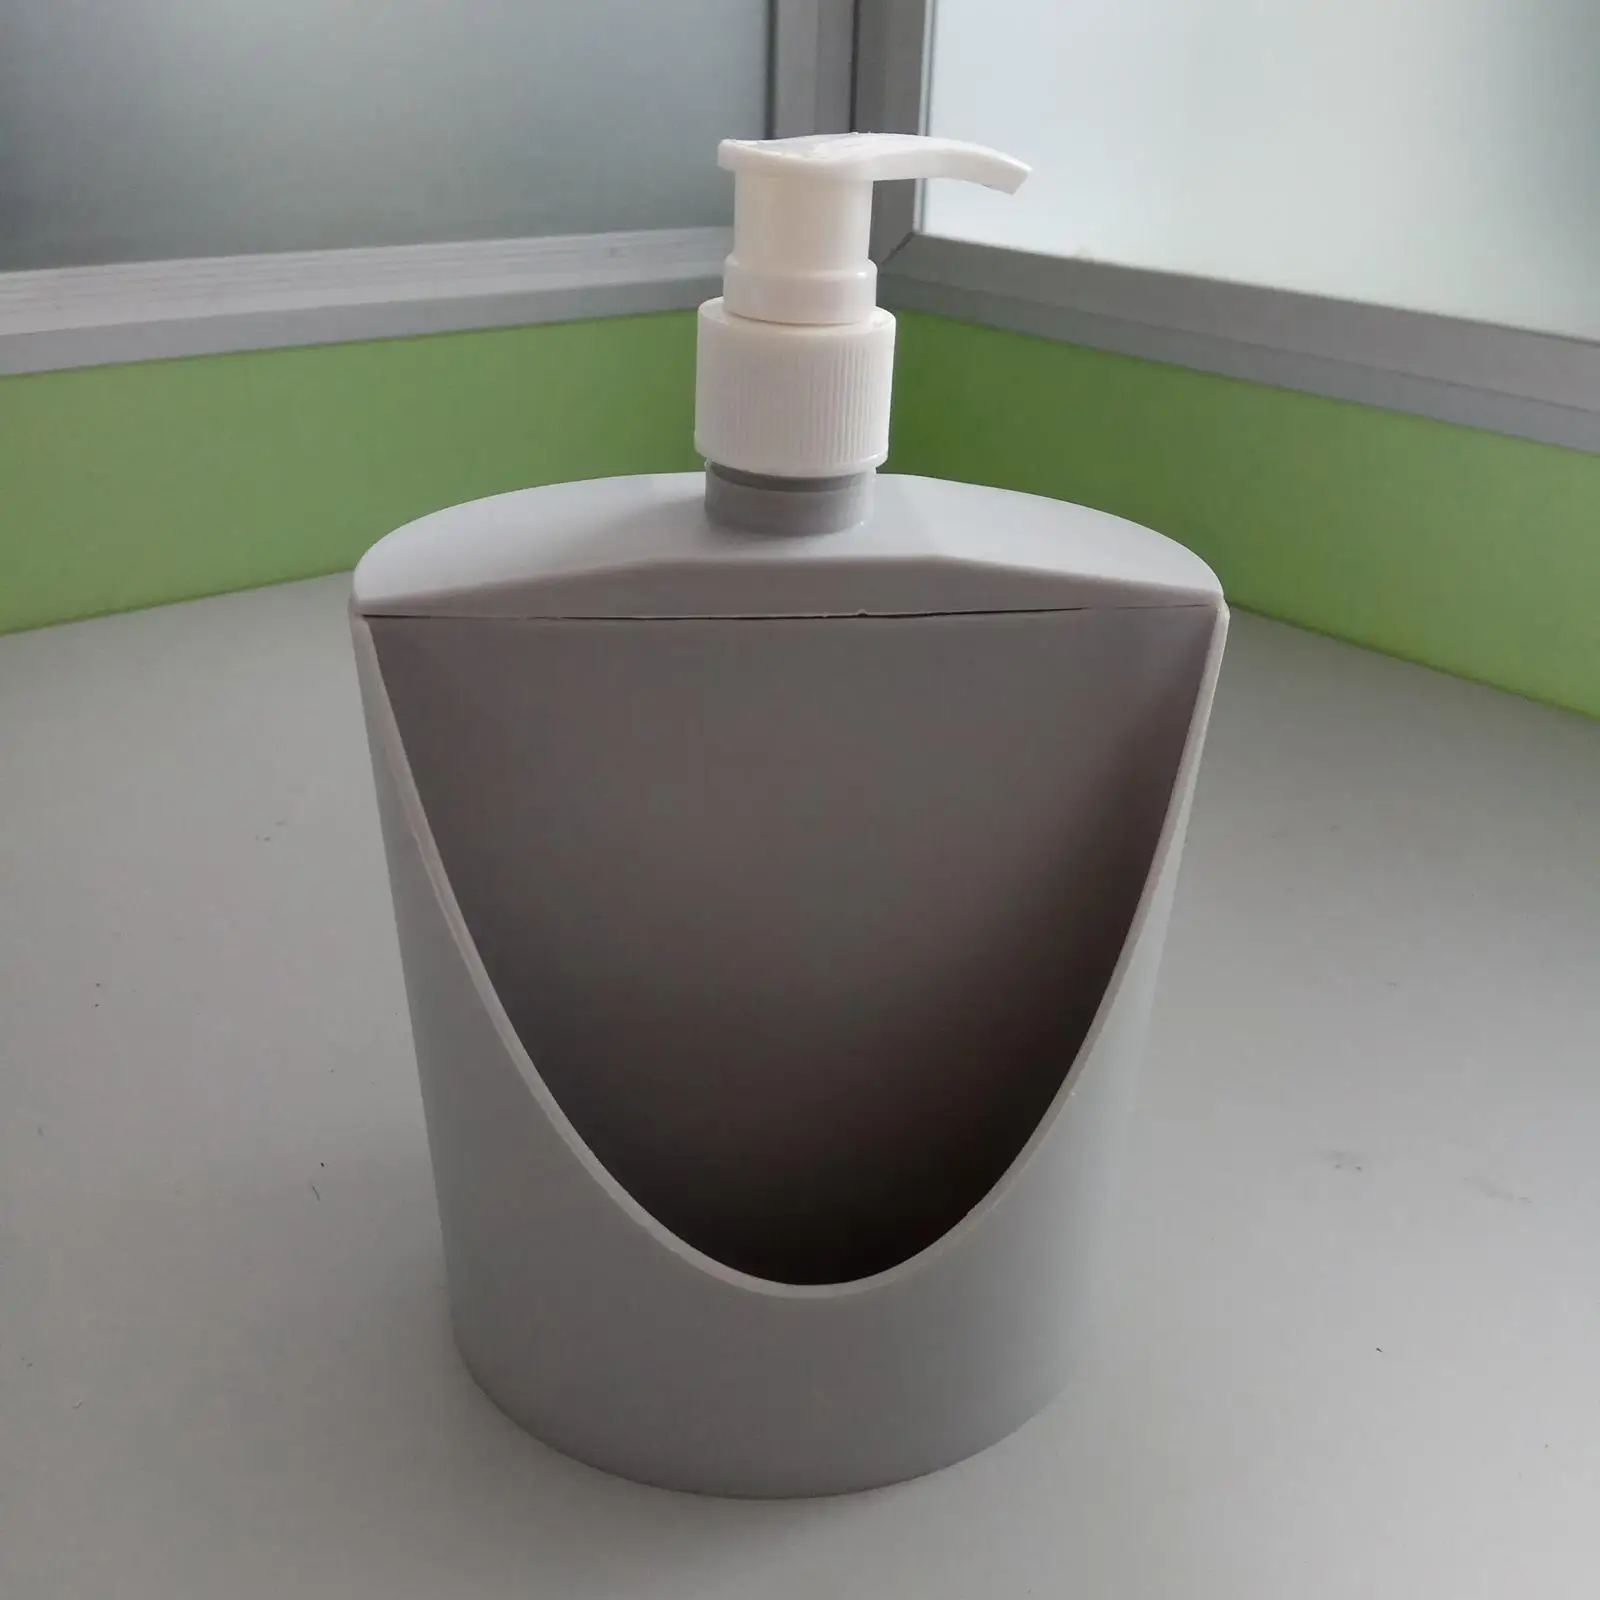 Kitchen Soap Dispenser with Sponge Holder Multipurpose Manual Dishwashing Soap Pump Soap Liquid Pump Bottle for Bathroom Bar